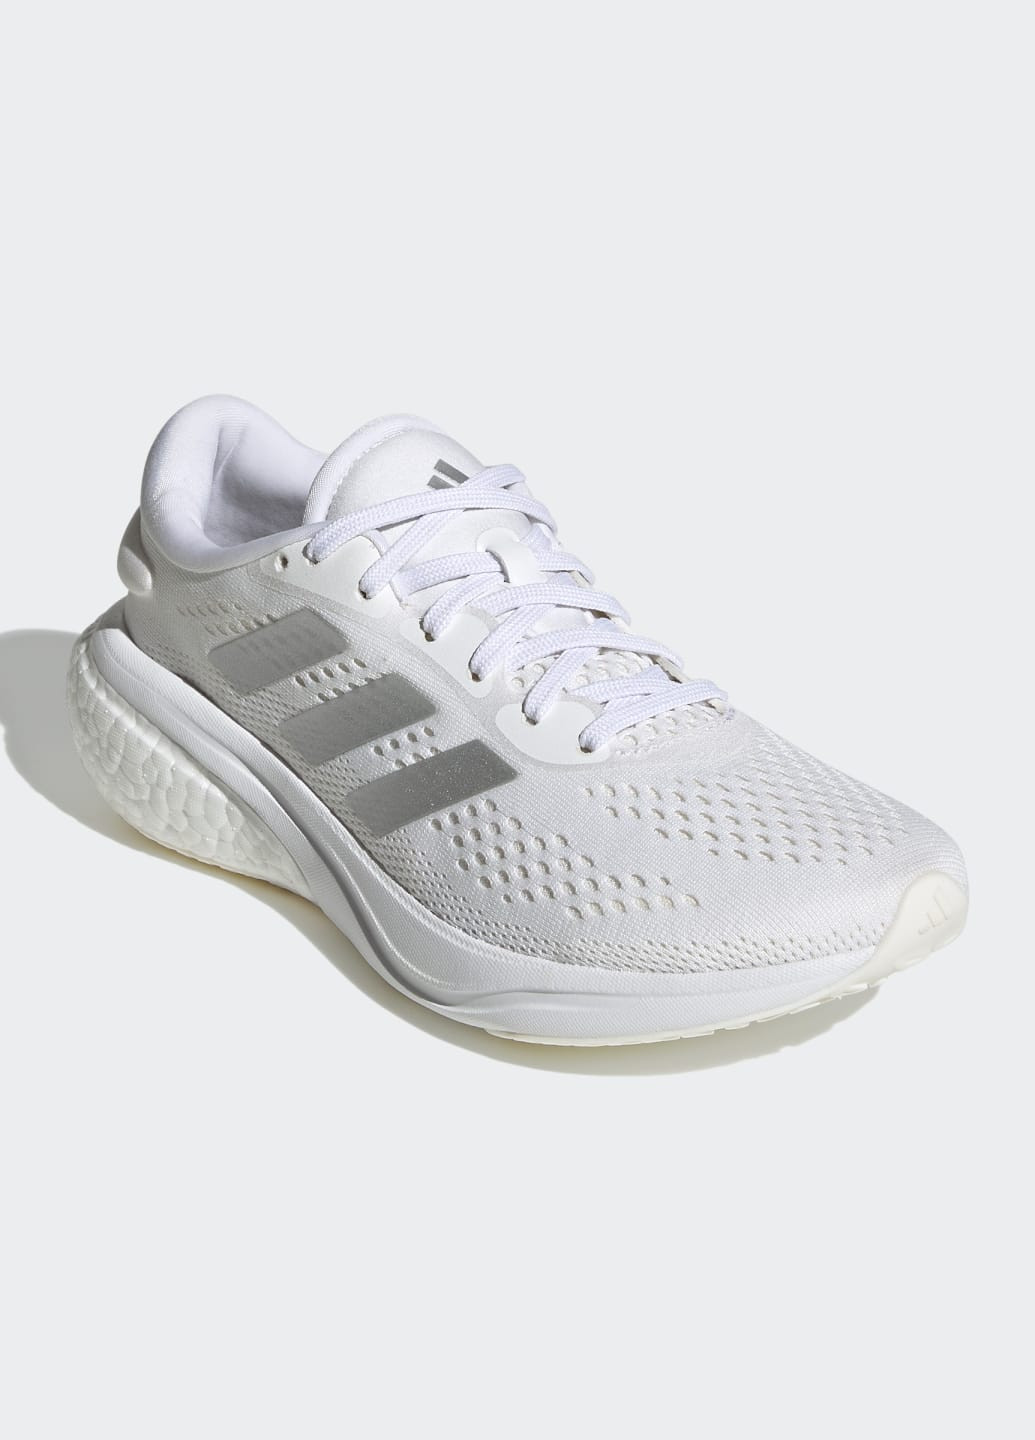 Білі всесезонні кросівки для бігу supernova 2.0 adidas